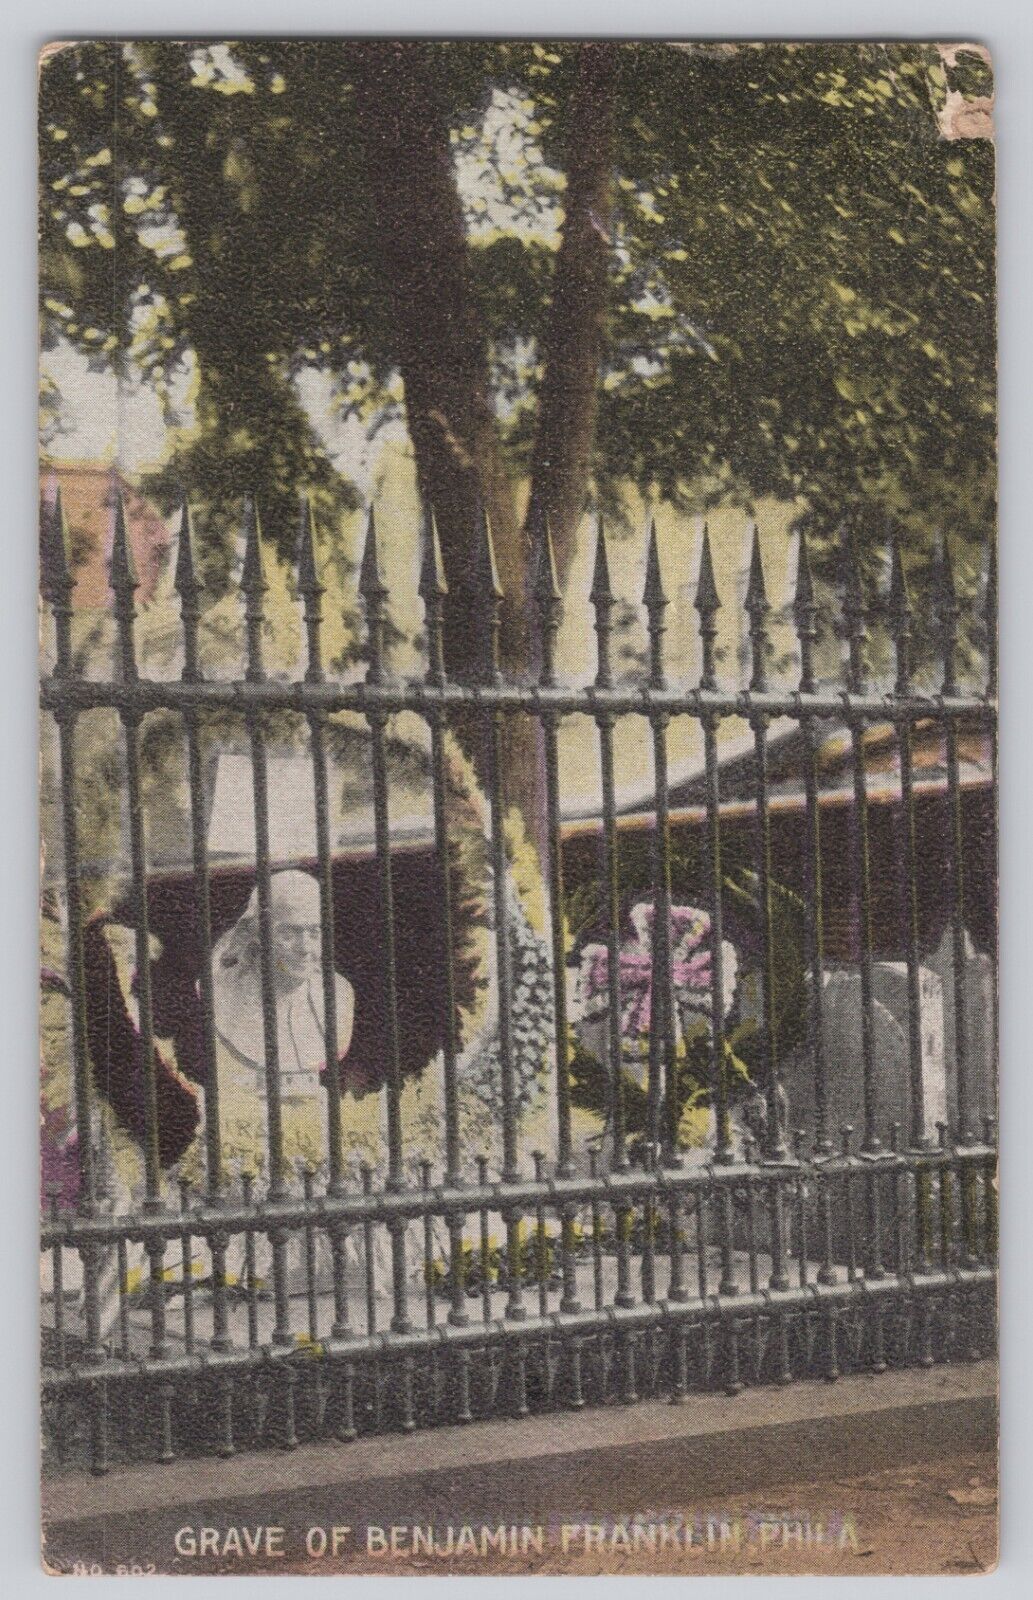 View of The Grave of Benjamin Franklin, Philadelphia, Pennsylvania 1909 Postcard